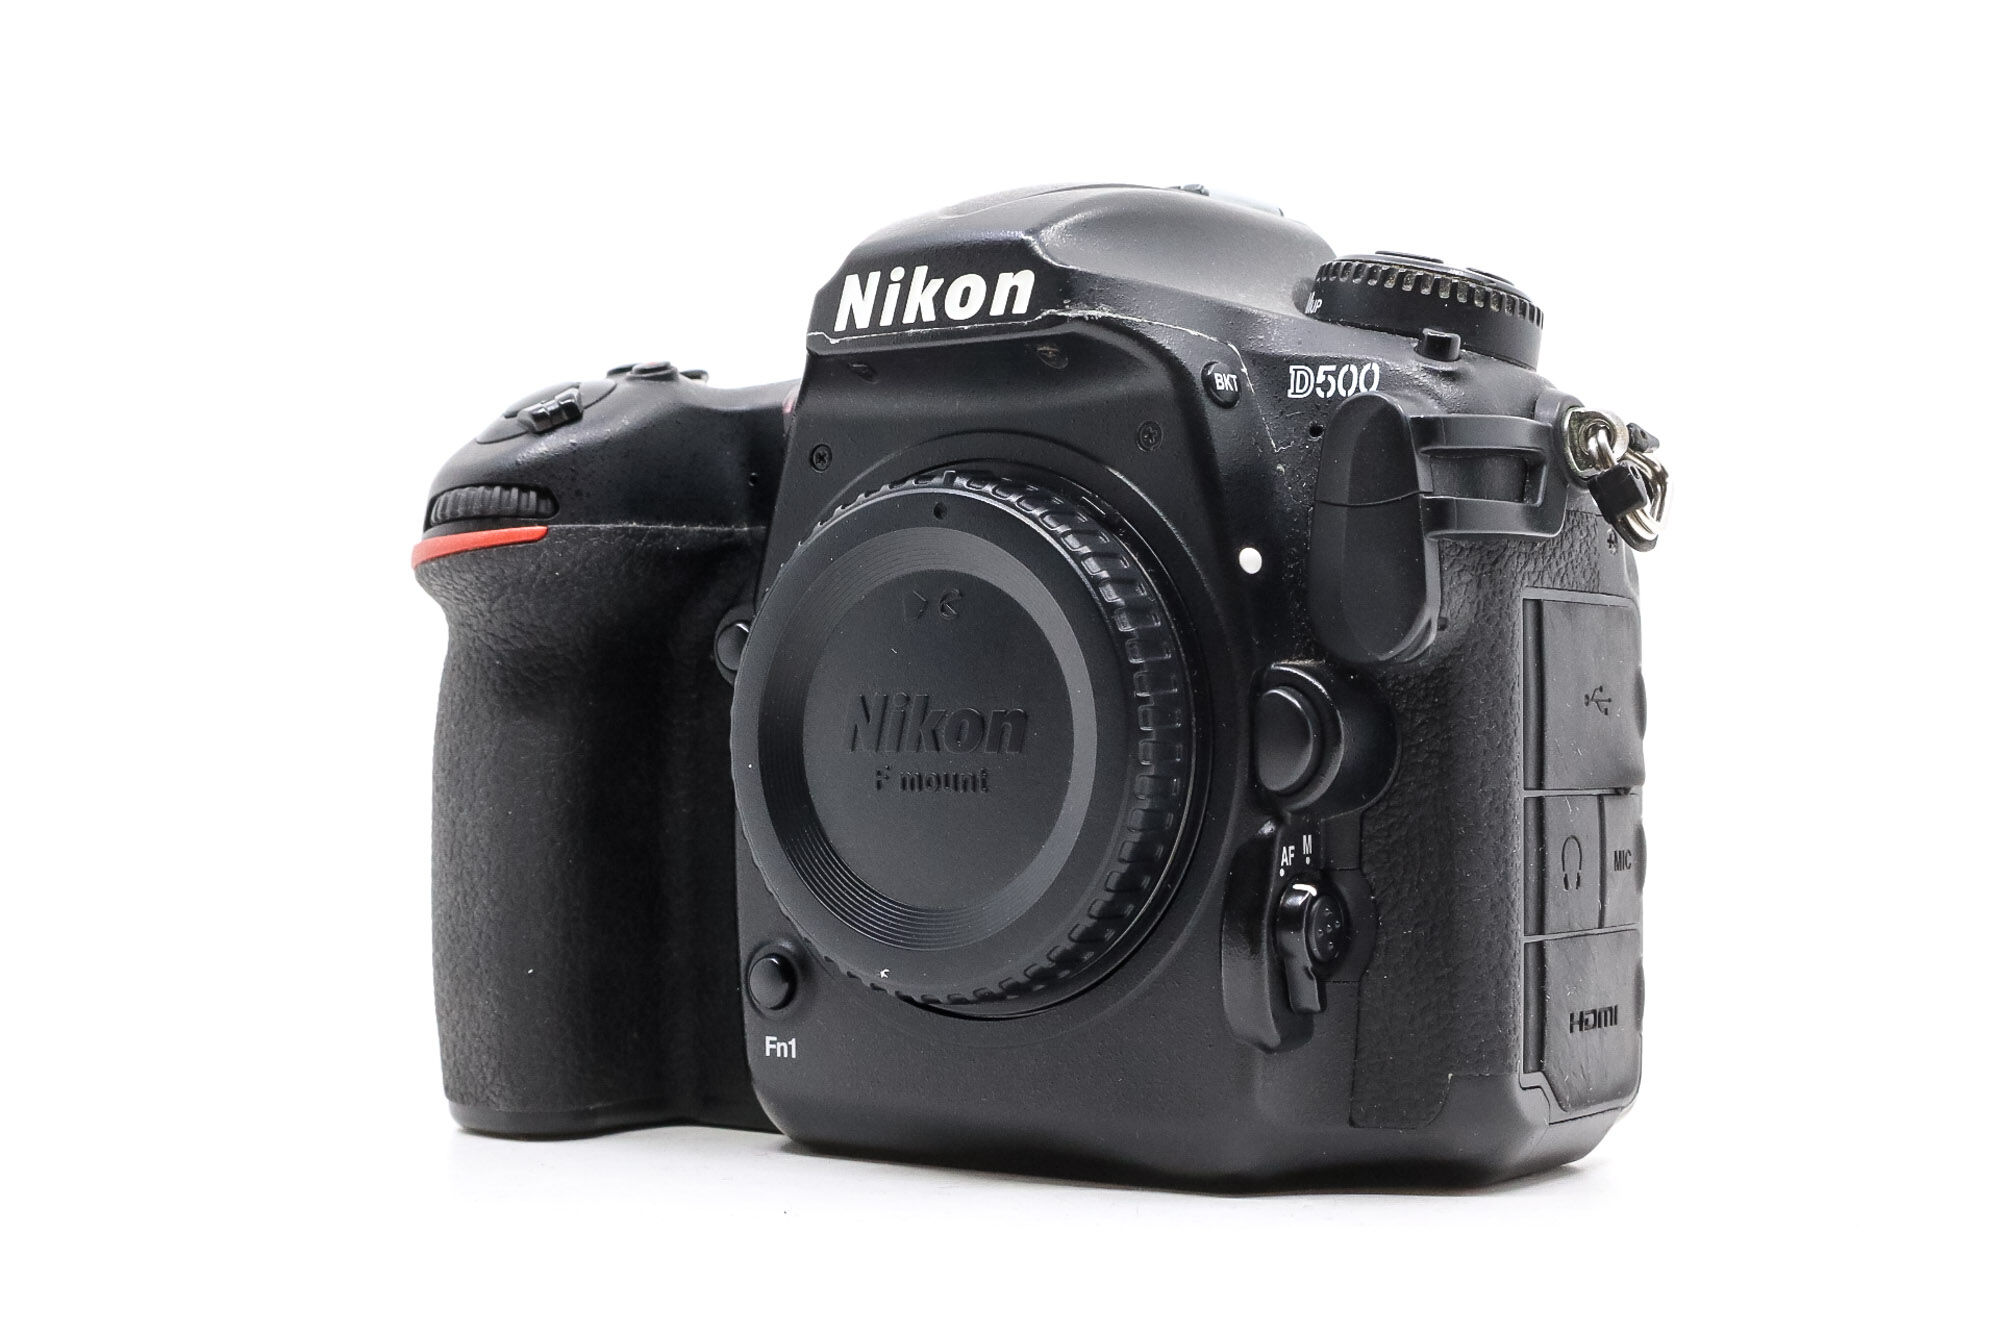 Nikon D500 (Condition: Good)